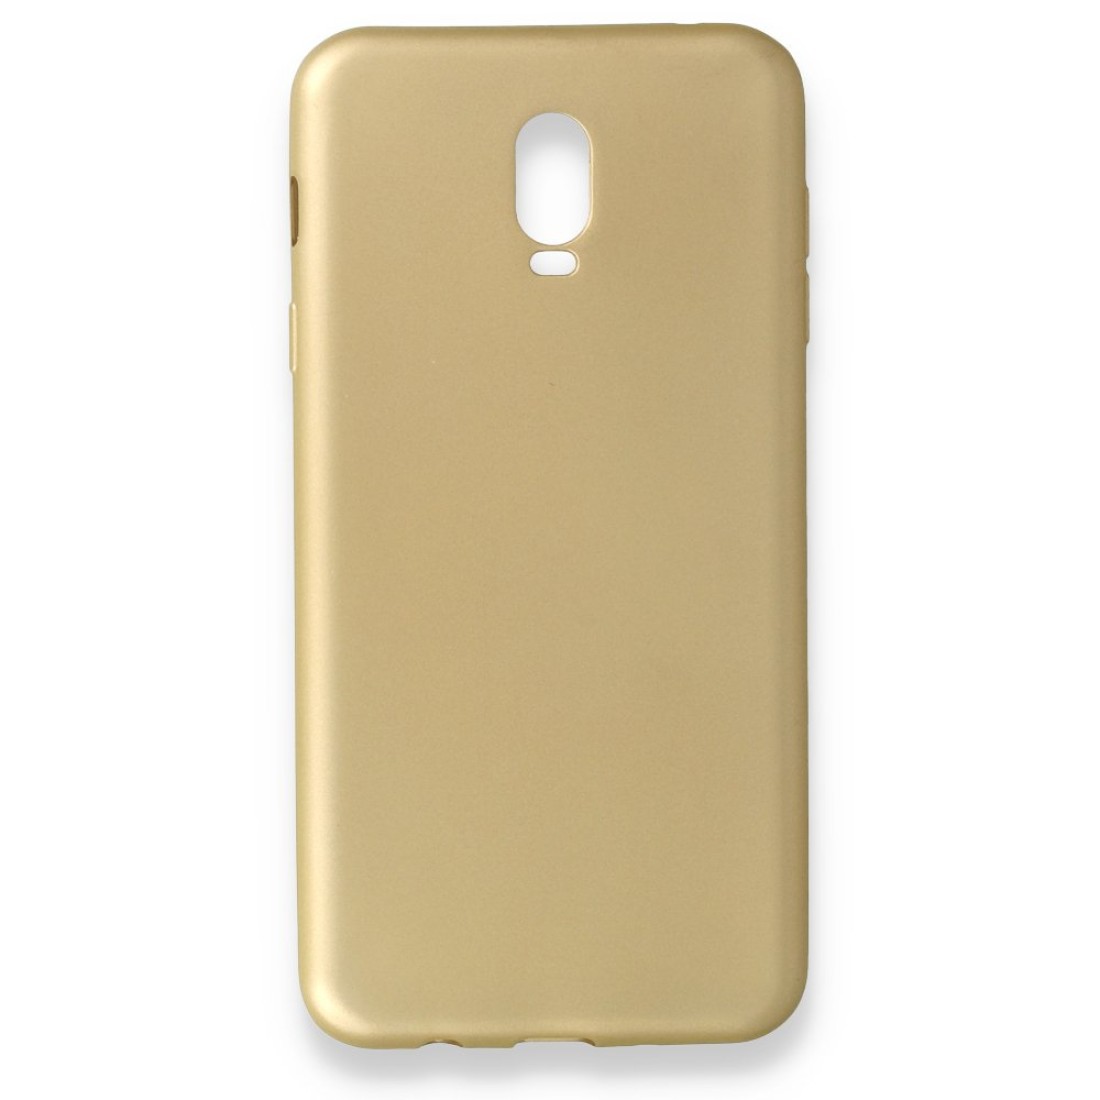 Samsung Galaxy C8 Kılıf Premium Rubber Silikon - Gold